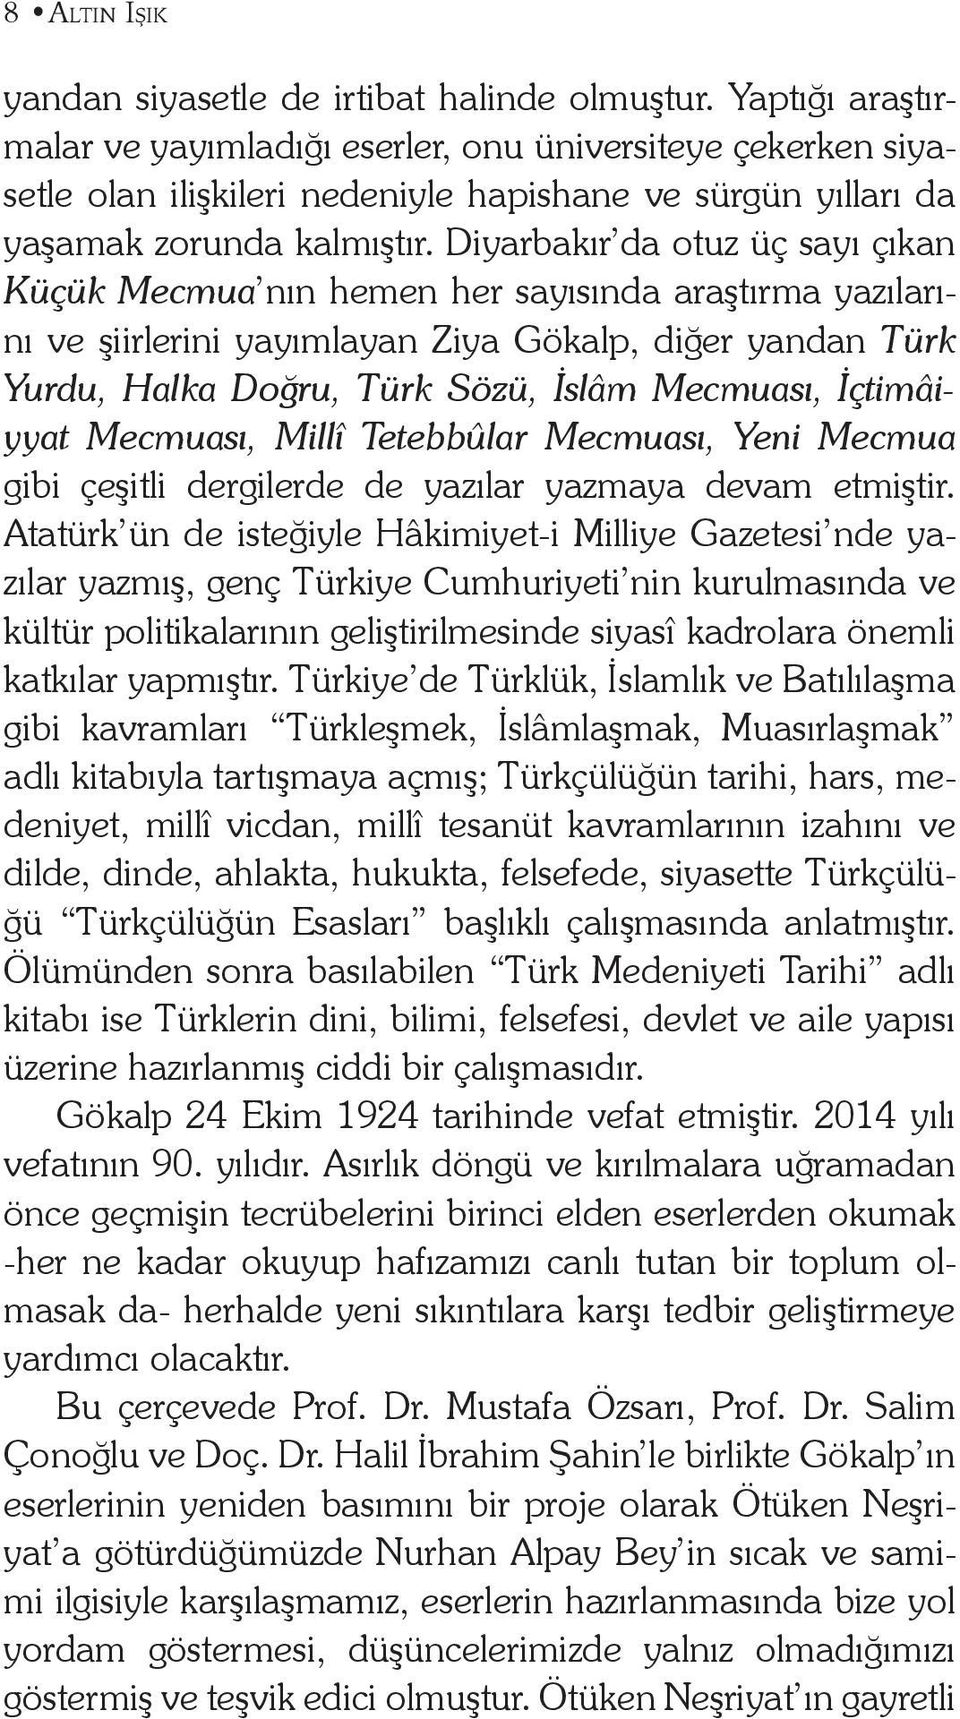 Diyarbakır da otuz üç sayı çıkan Küçük Mecmua nın hemen her sayısında araştırma yazılarını ve şiirlerini yayımlayan Ziya Gökalp, diğer yandan Türk Yurdu, Halka Doğru, Türk Sözü, İslâm Mecmuası,